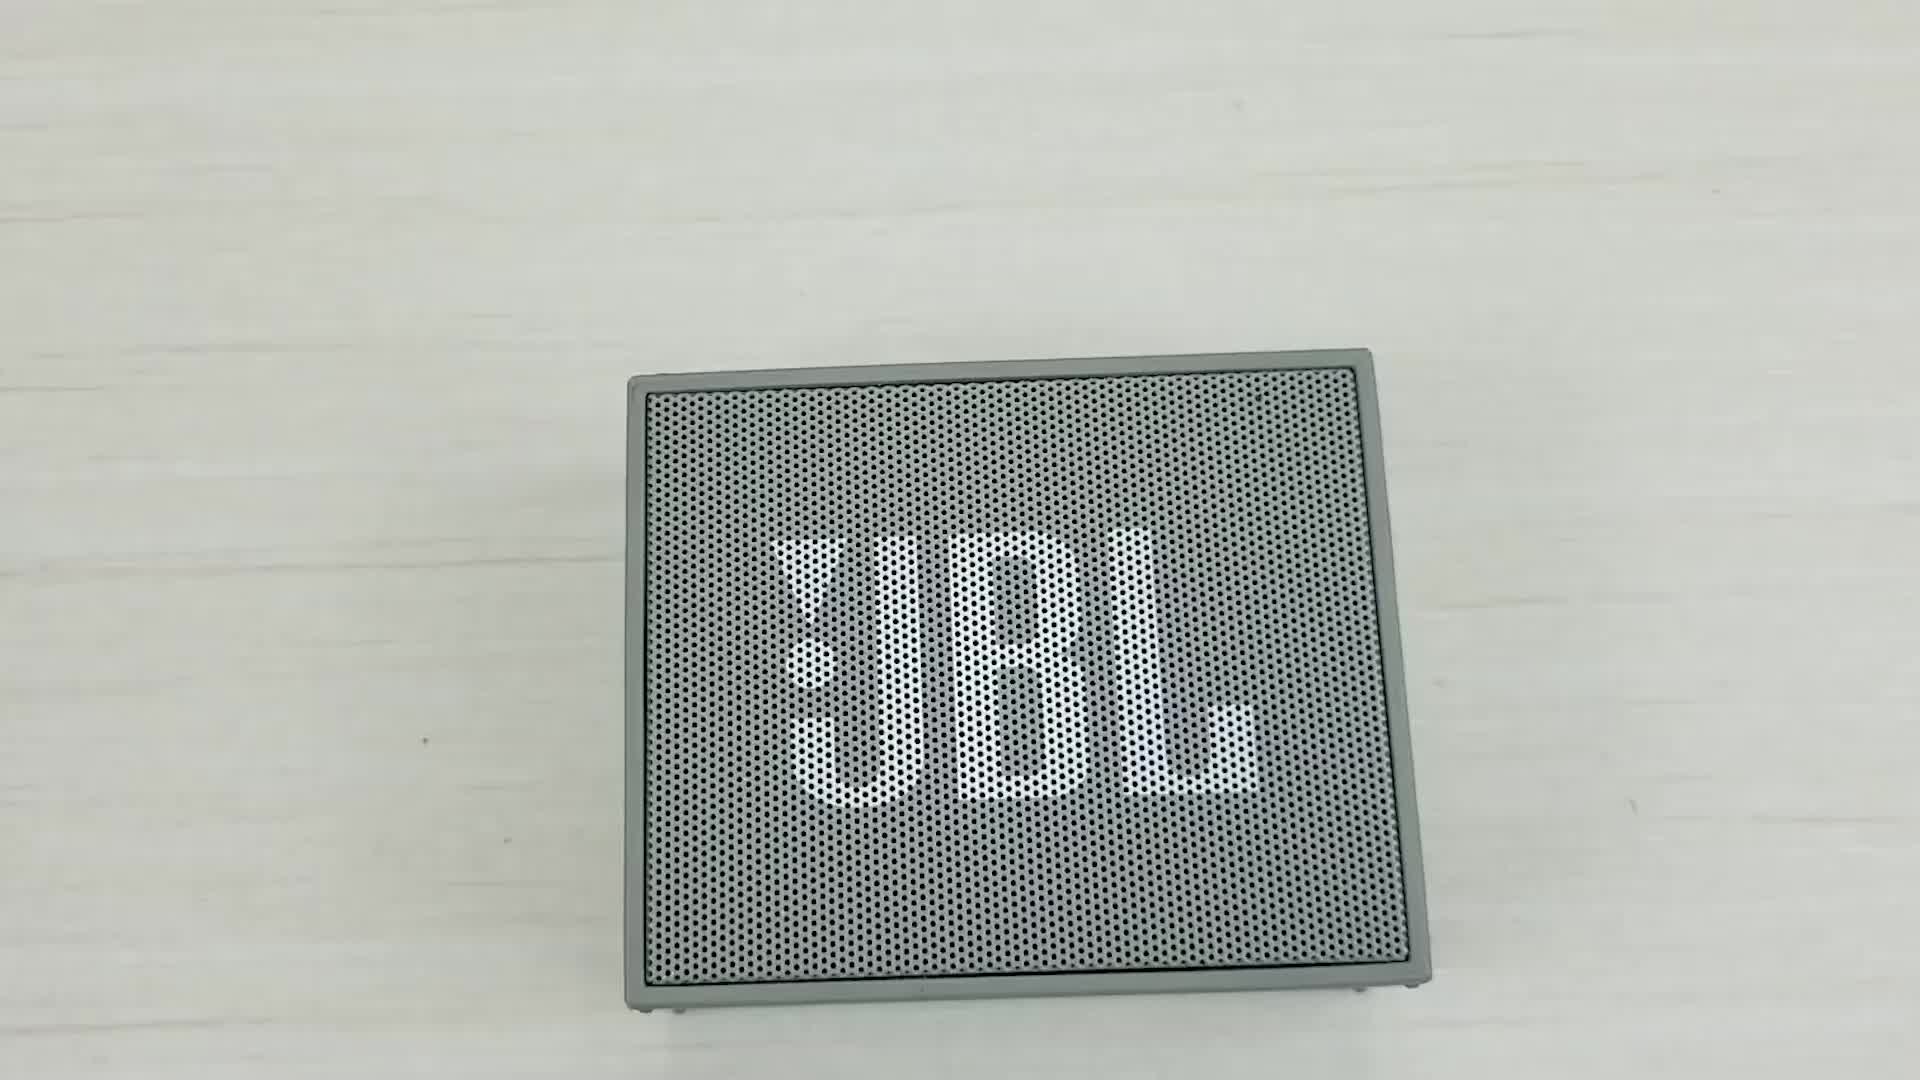 拆解JBL蓝牙音箱，看看大品牌一百多元产品的内部做工和细节.#硬核拆解 